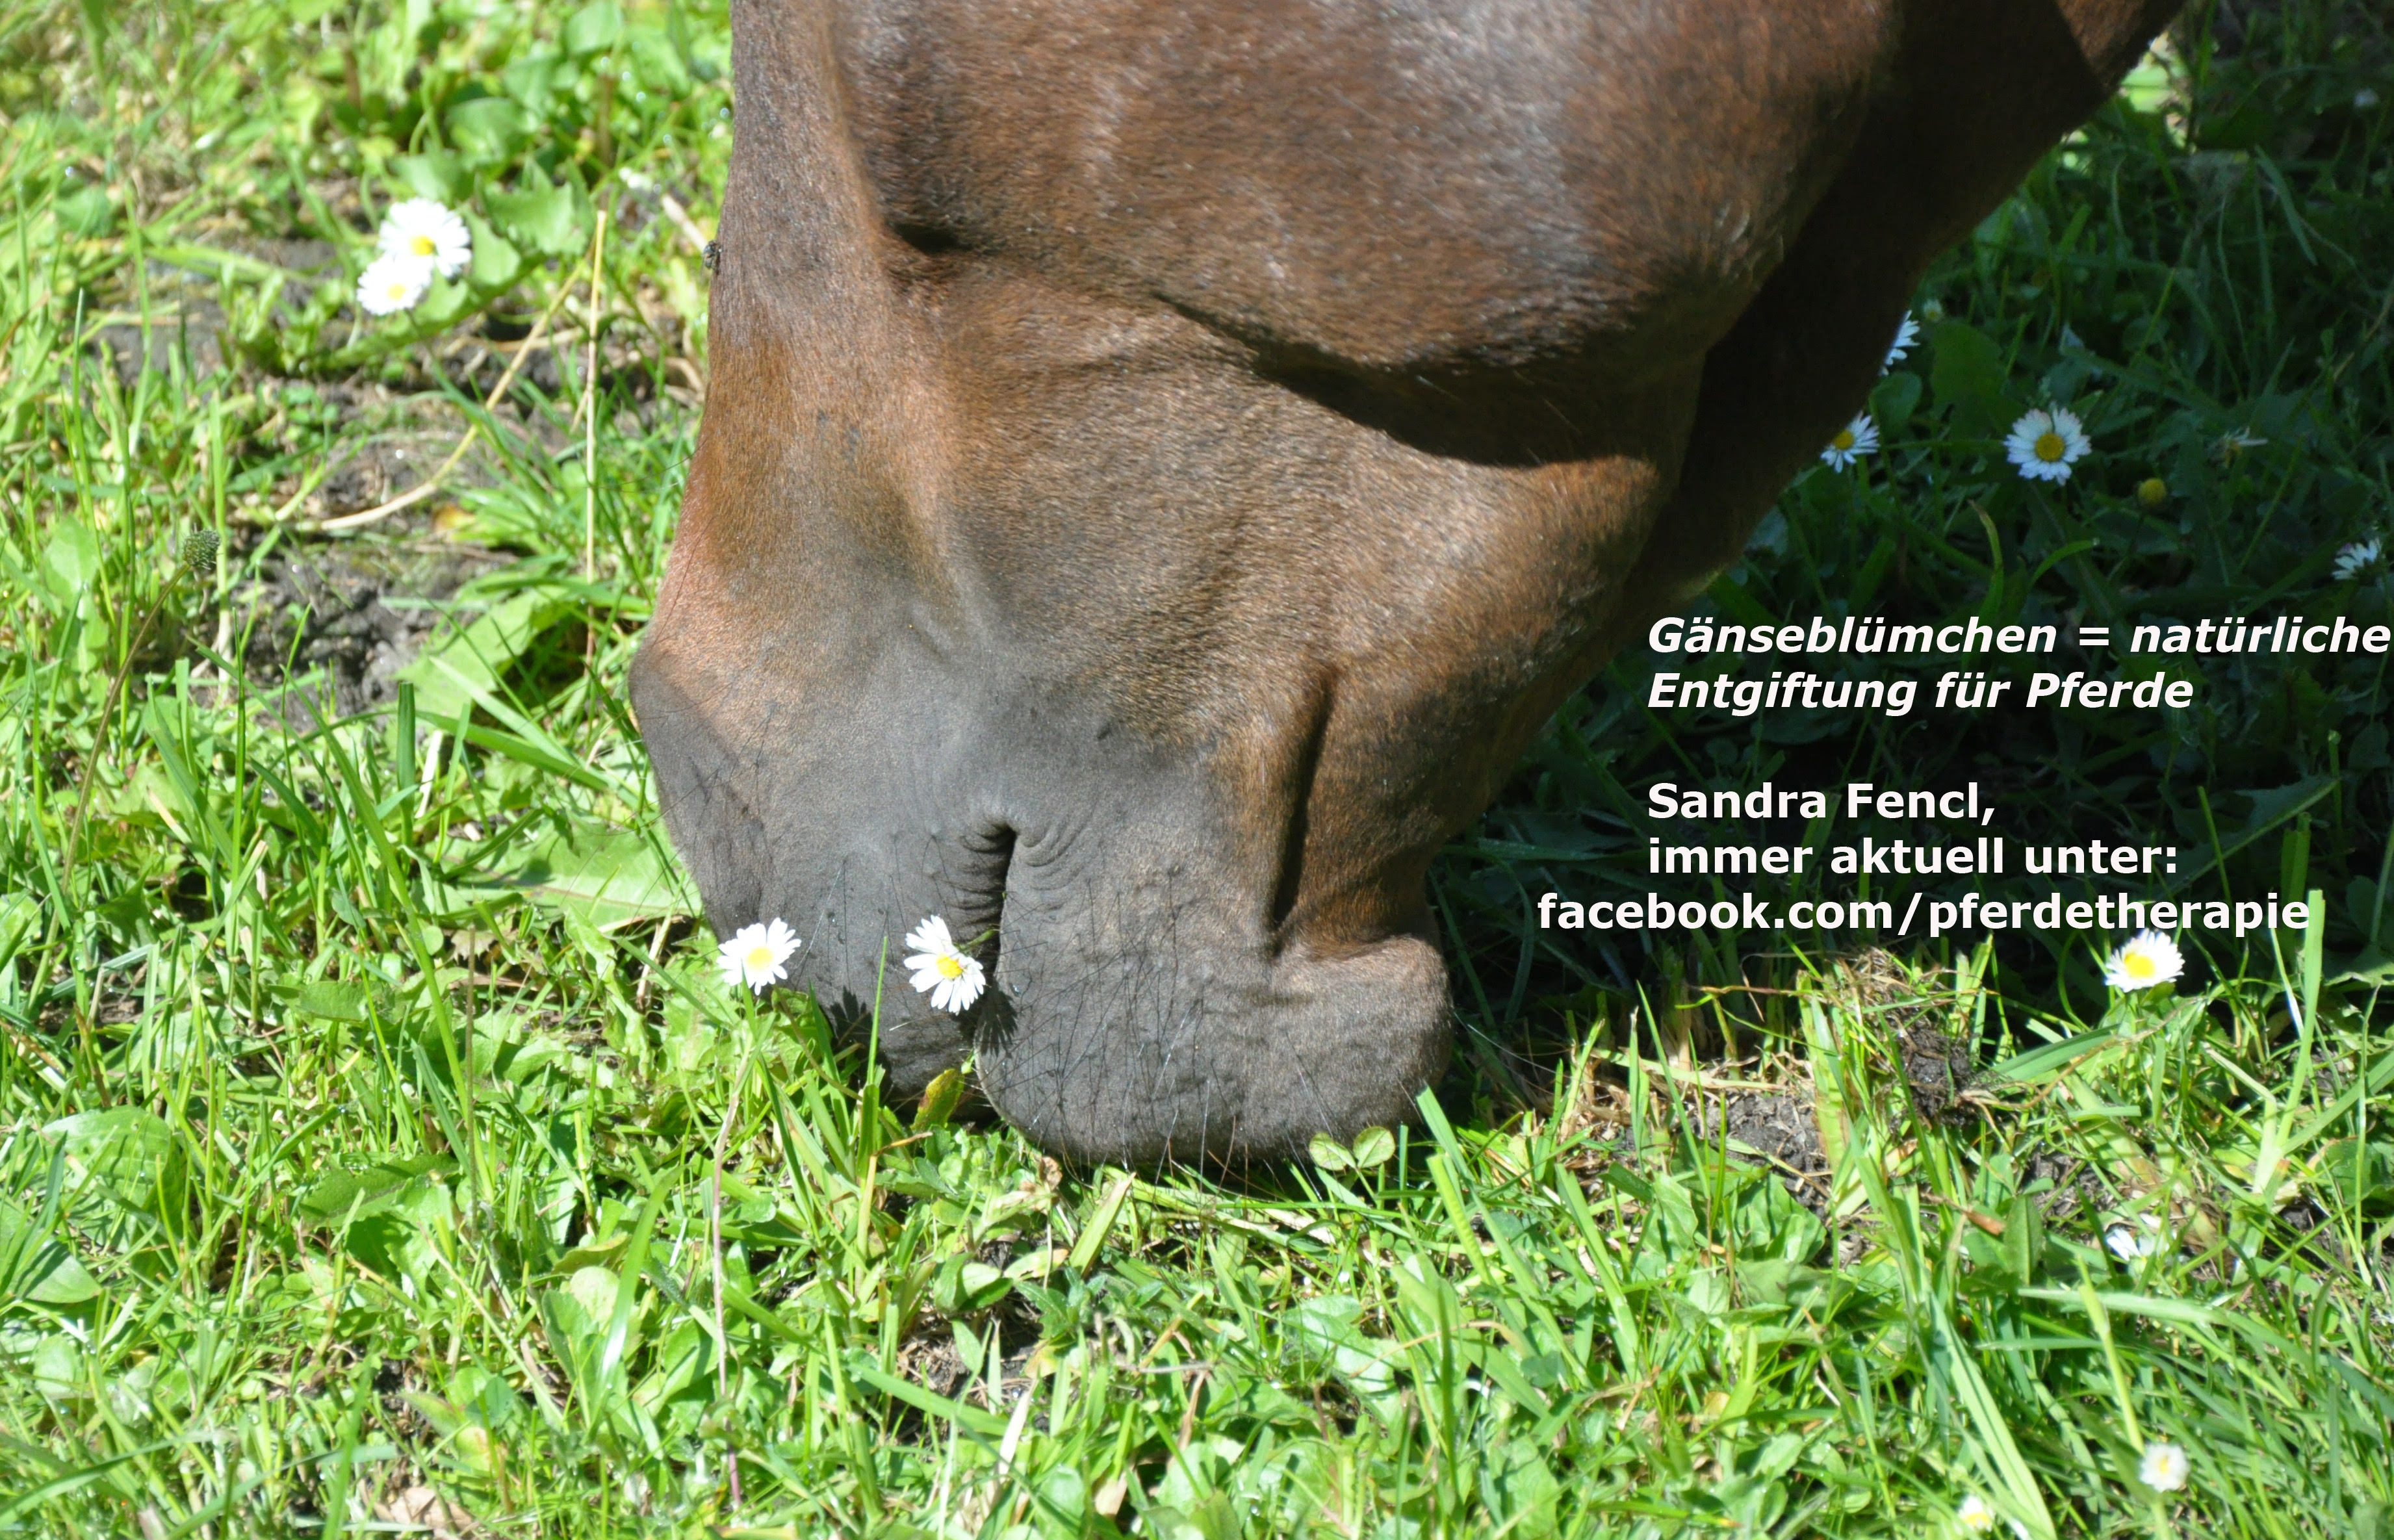 Gänseblümchen - natürliche Pferde-Entgiftung